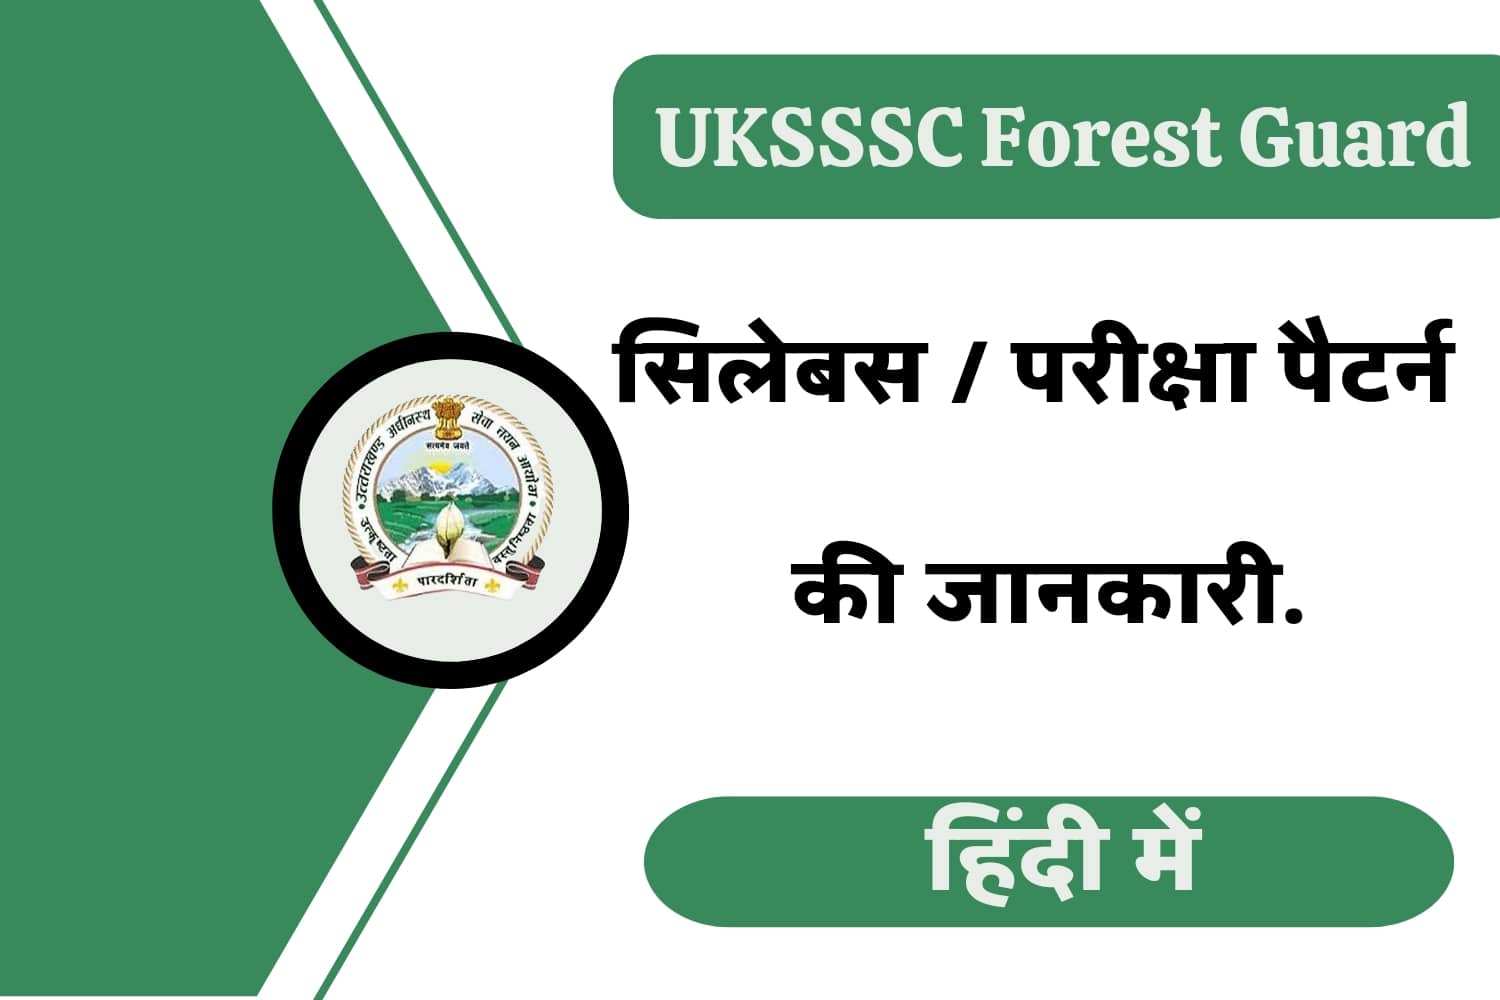 UKSSSC Forest Guard  Syllabus In Hindi | उत्तराखंड फारेस्ट गार्ड सिलेबस हिंदी में